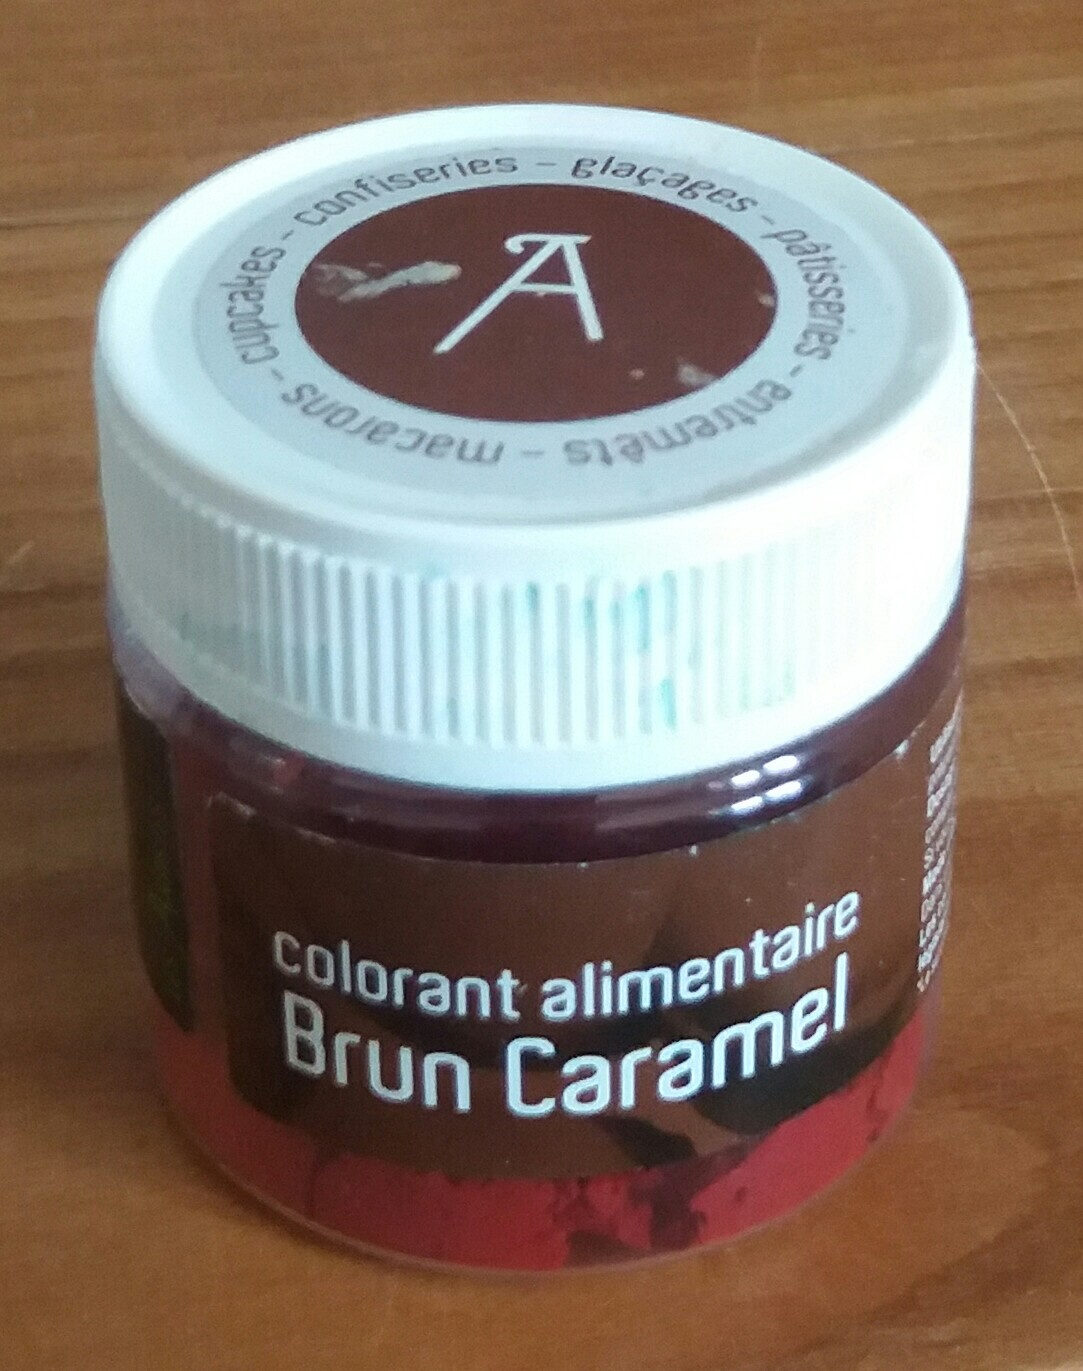 Colorant alimentaire Brun caramel - Prodotto - fr